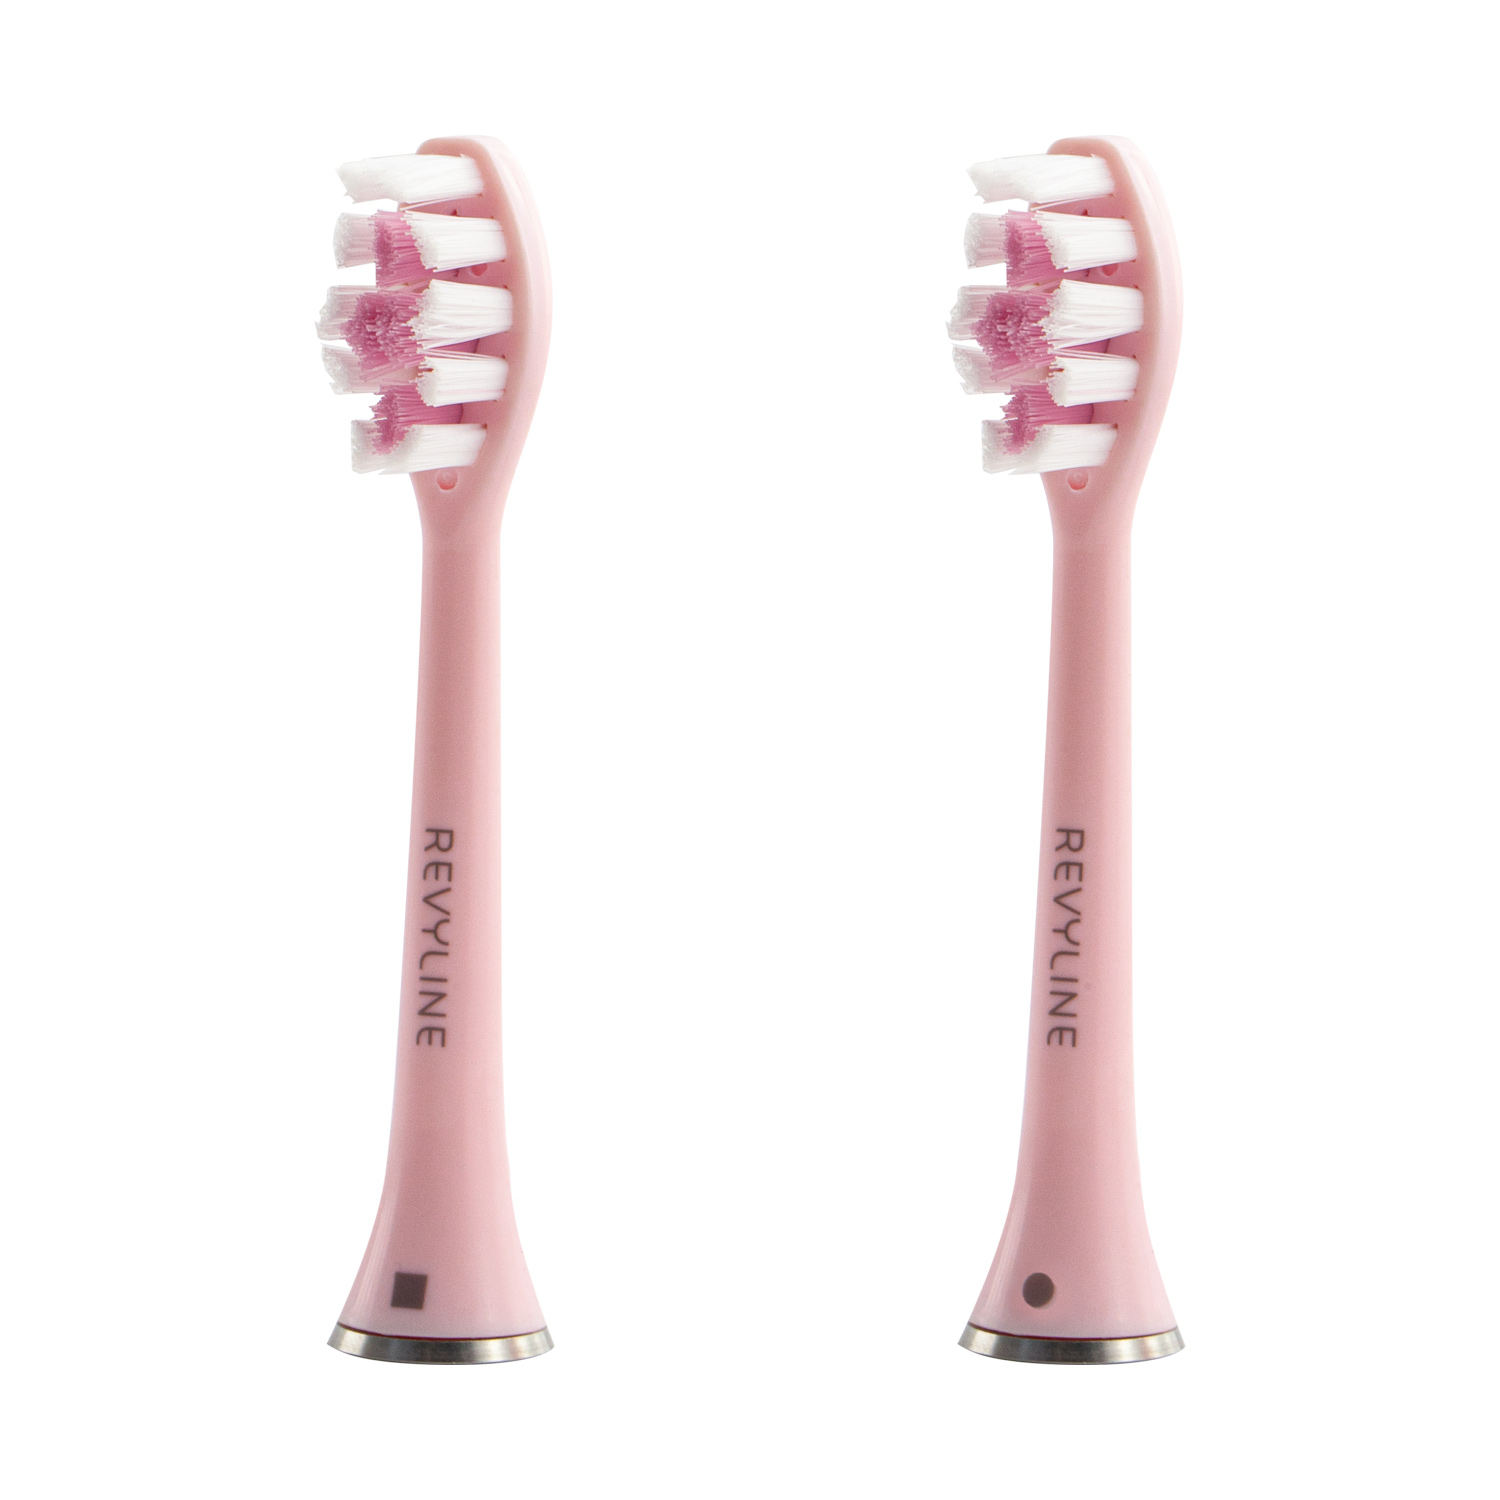 Электрическая зубная щетка Revyline RL 010 розовая